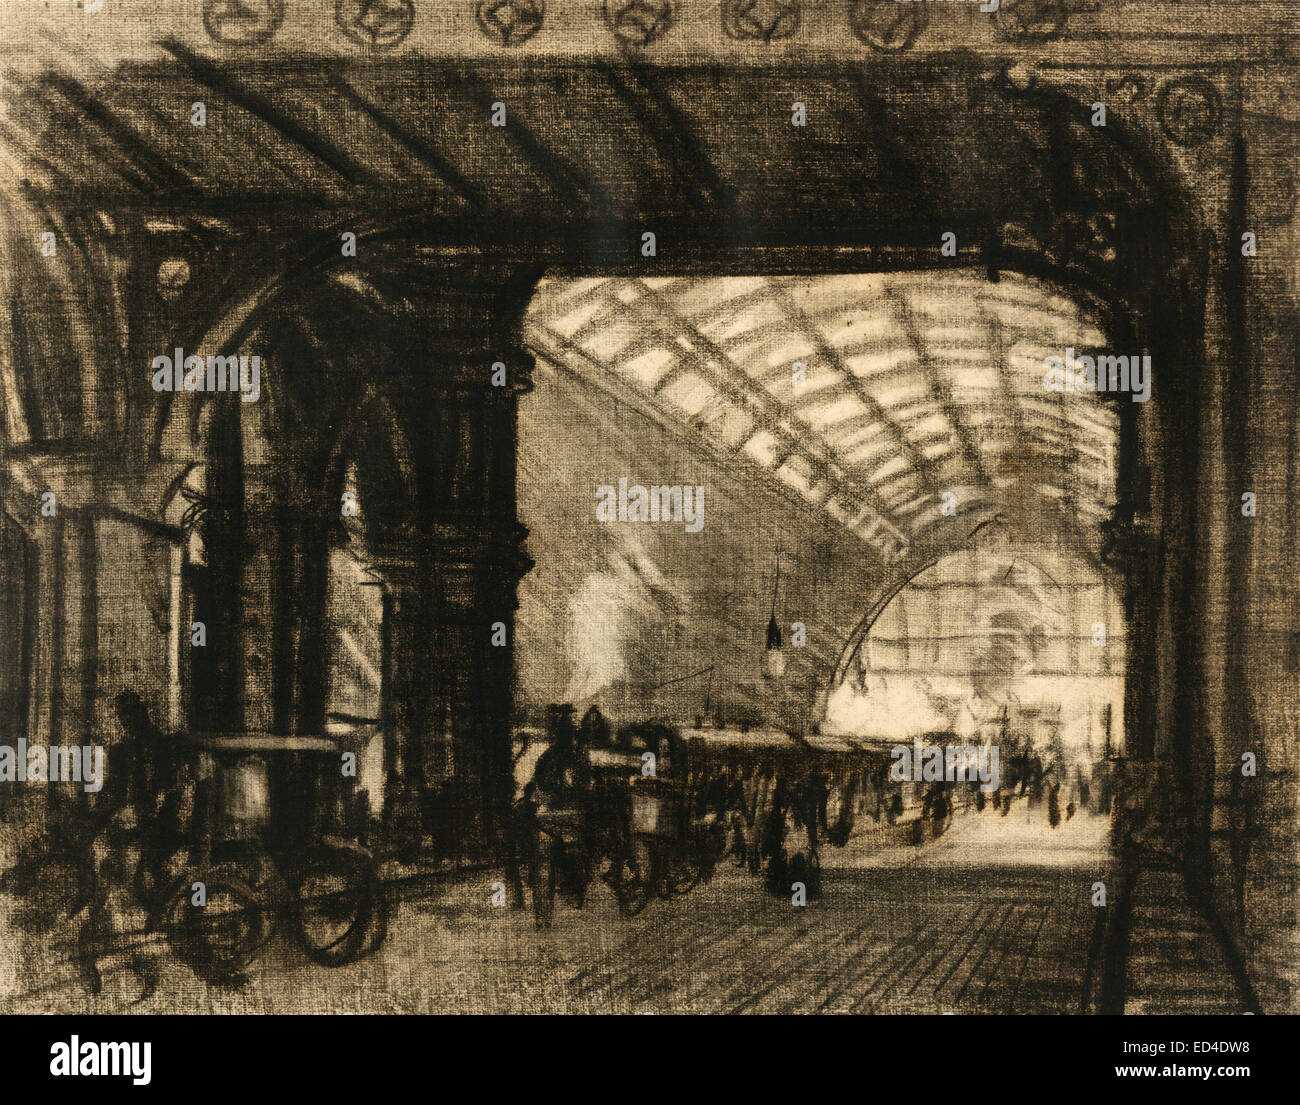 La stazione di St. Pancras - Londra, Inghilterra. Visualizza carrello passato in primo piano a sinistra sotto il ponte a lungo con lucernaio stazione arcuata affollato di figure e carrelli oltre, circa 1908 Foto Stock